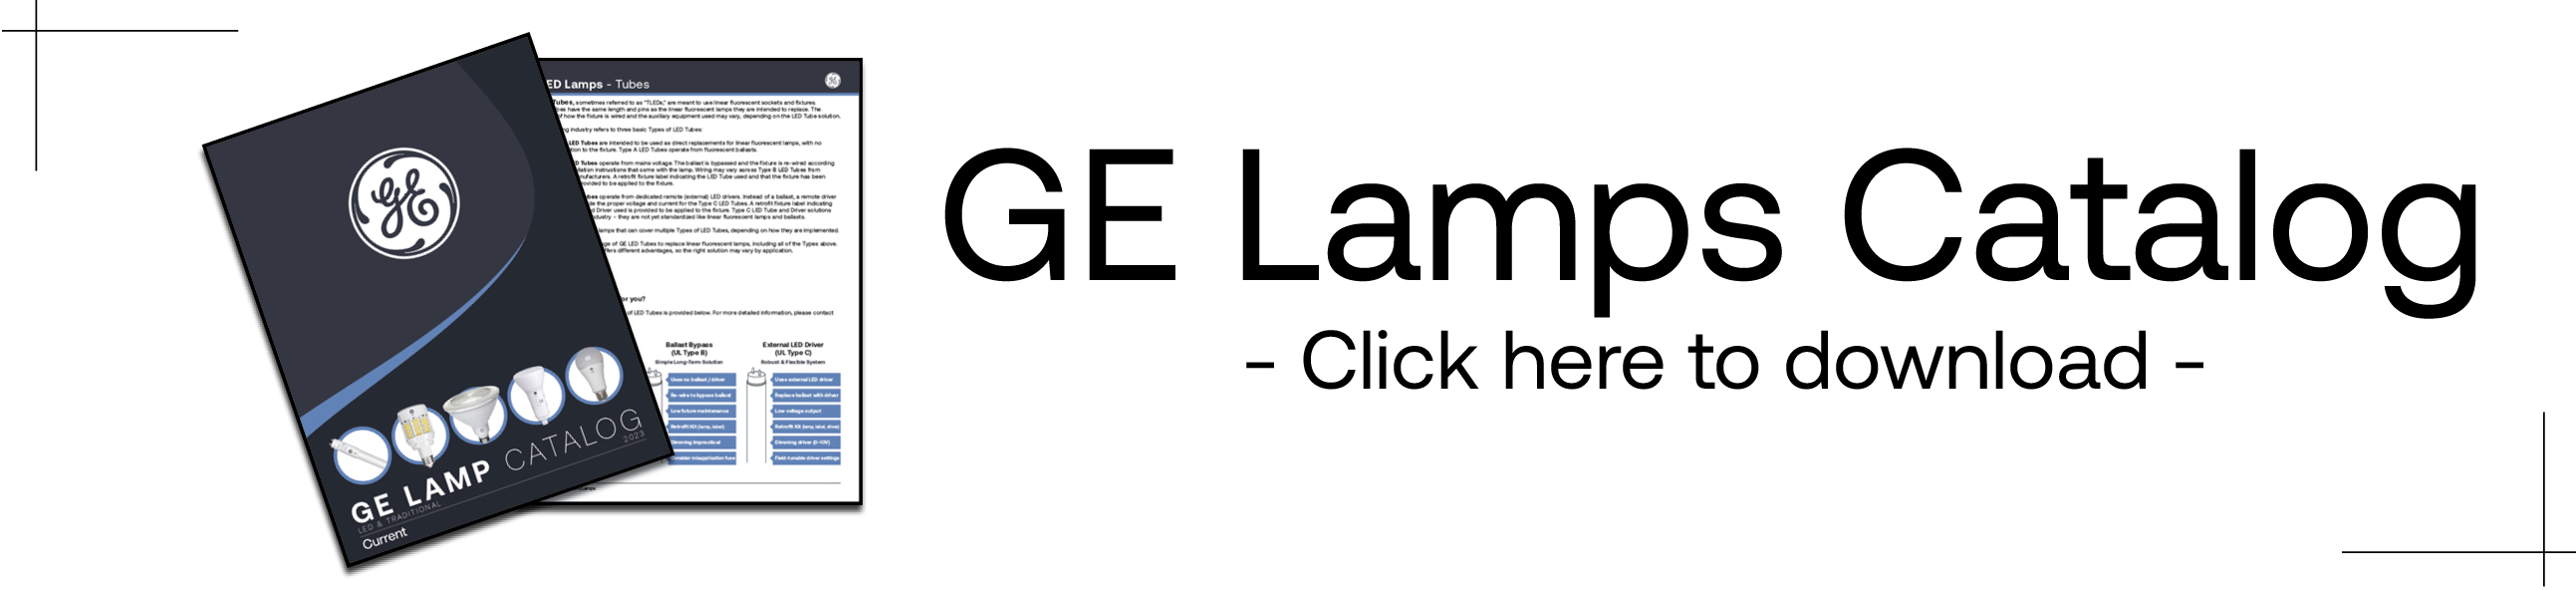 GE Lamps Catalog